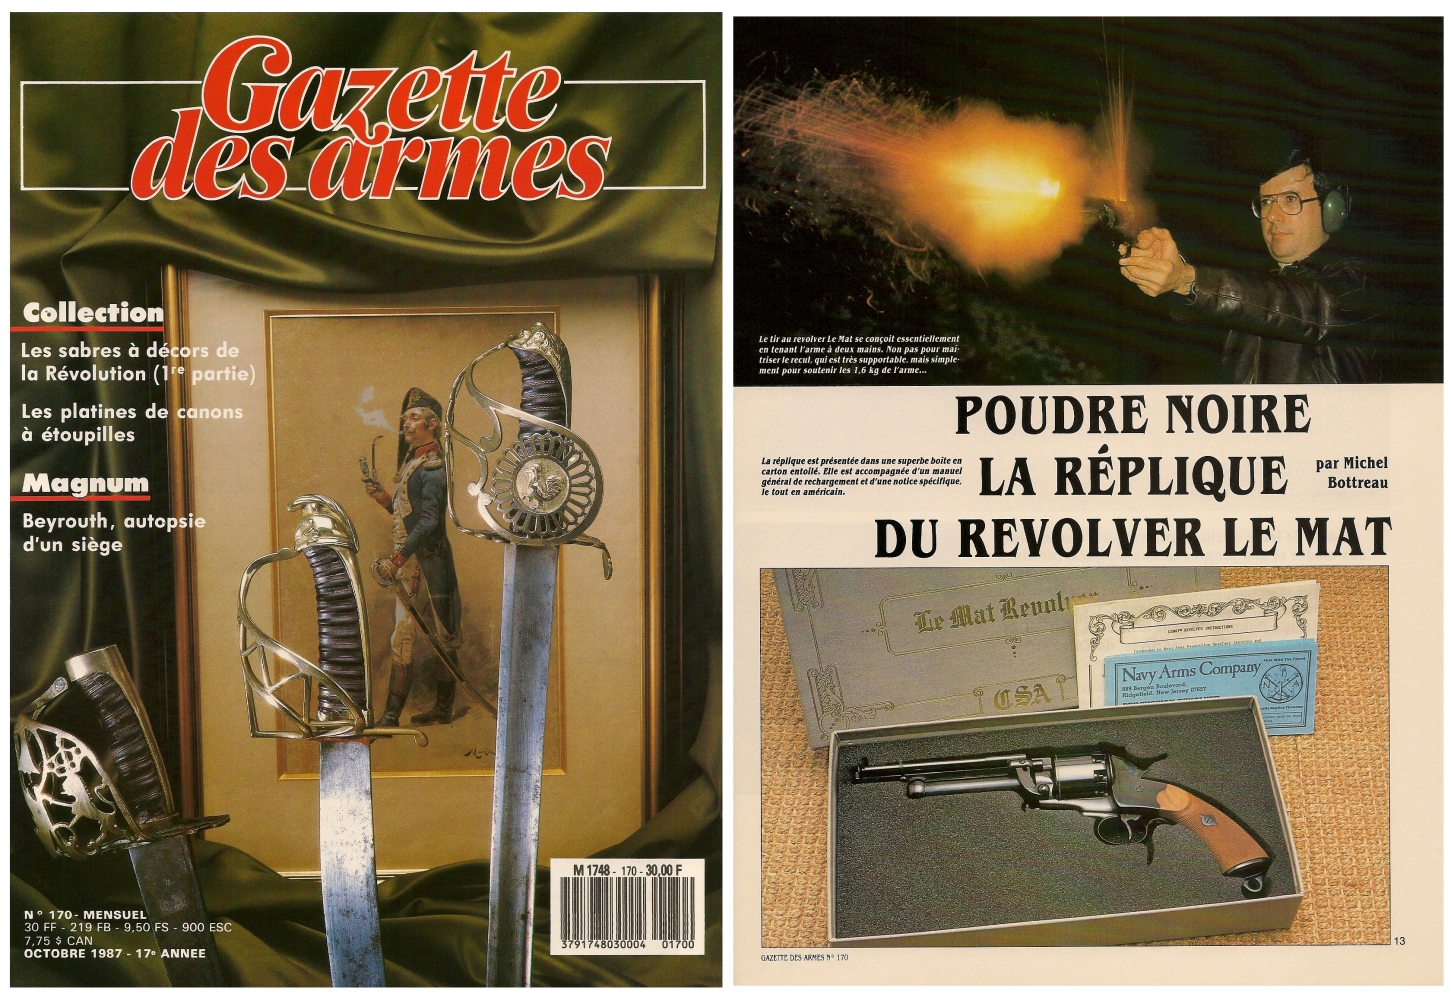 Le banc d’essai de la réplique du revolver Le Mat a été publié sur 8 pages dans le magazine Gazette des Armes n°170 (octobre 1987).